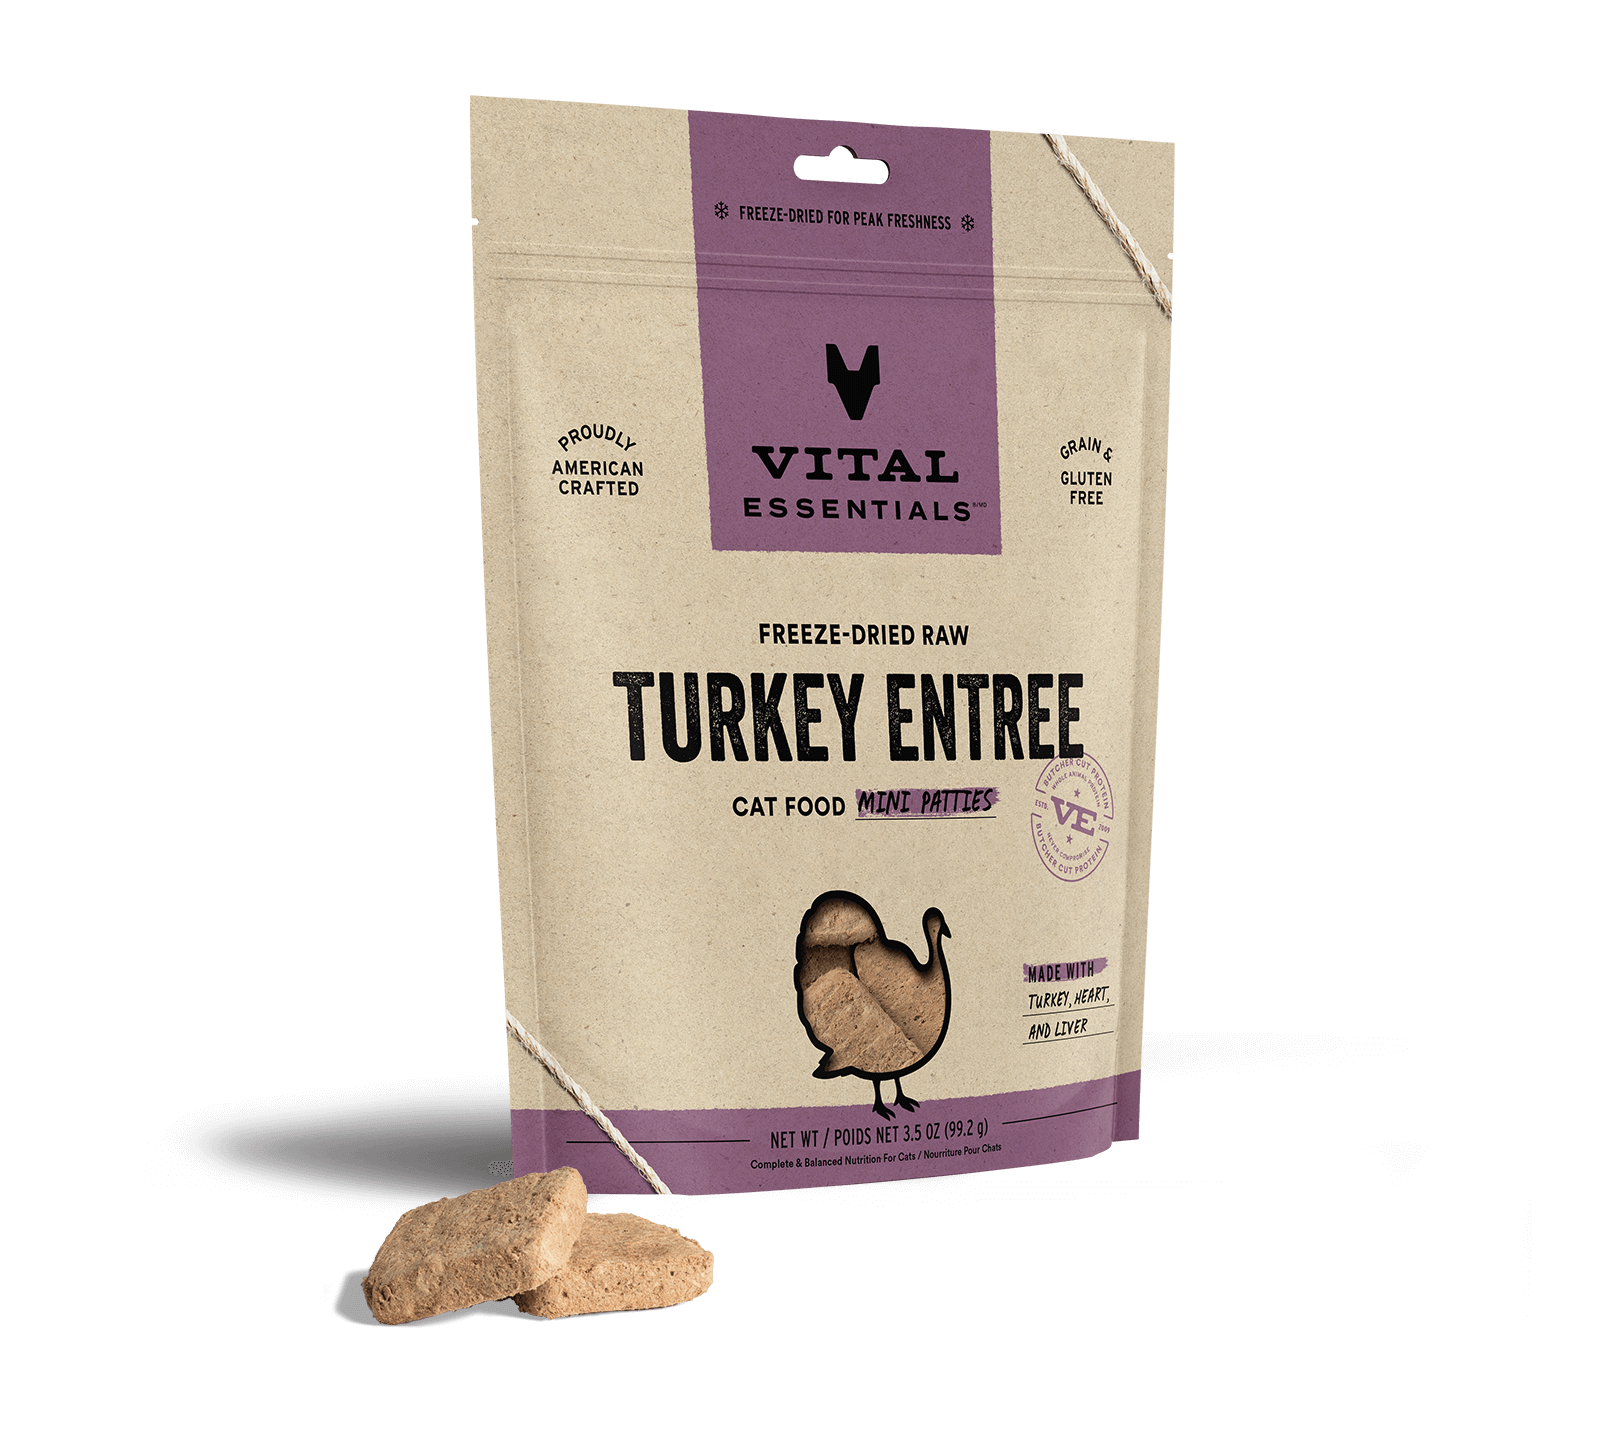 Vital Essentials Freeze-Dried Raw Turkey Entree Cat Food Mini Patties, 3.5 oz - Healing/First Aid